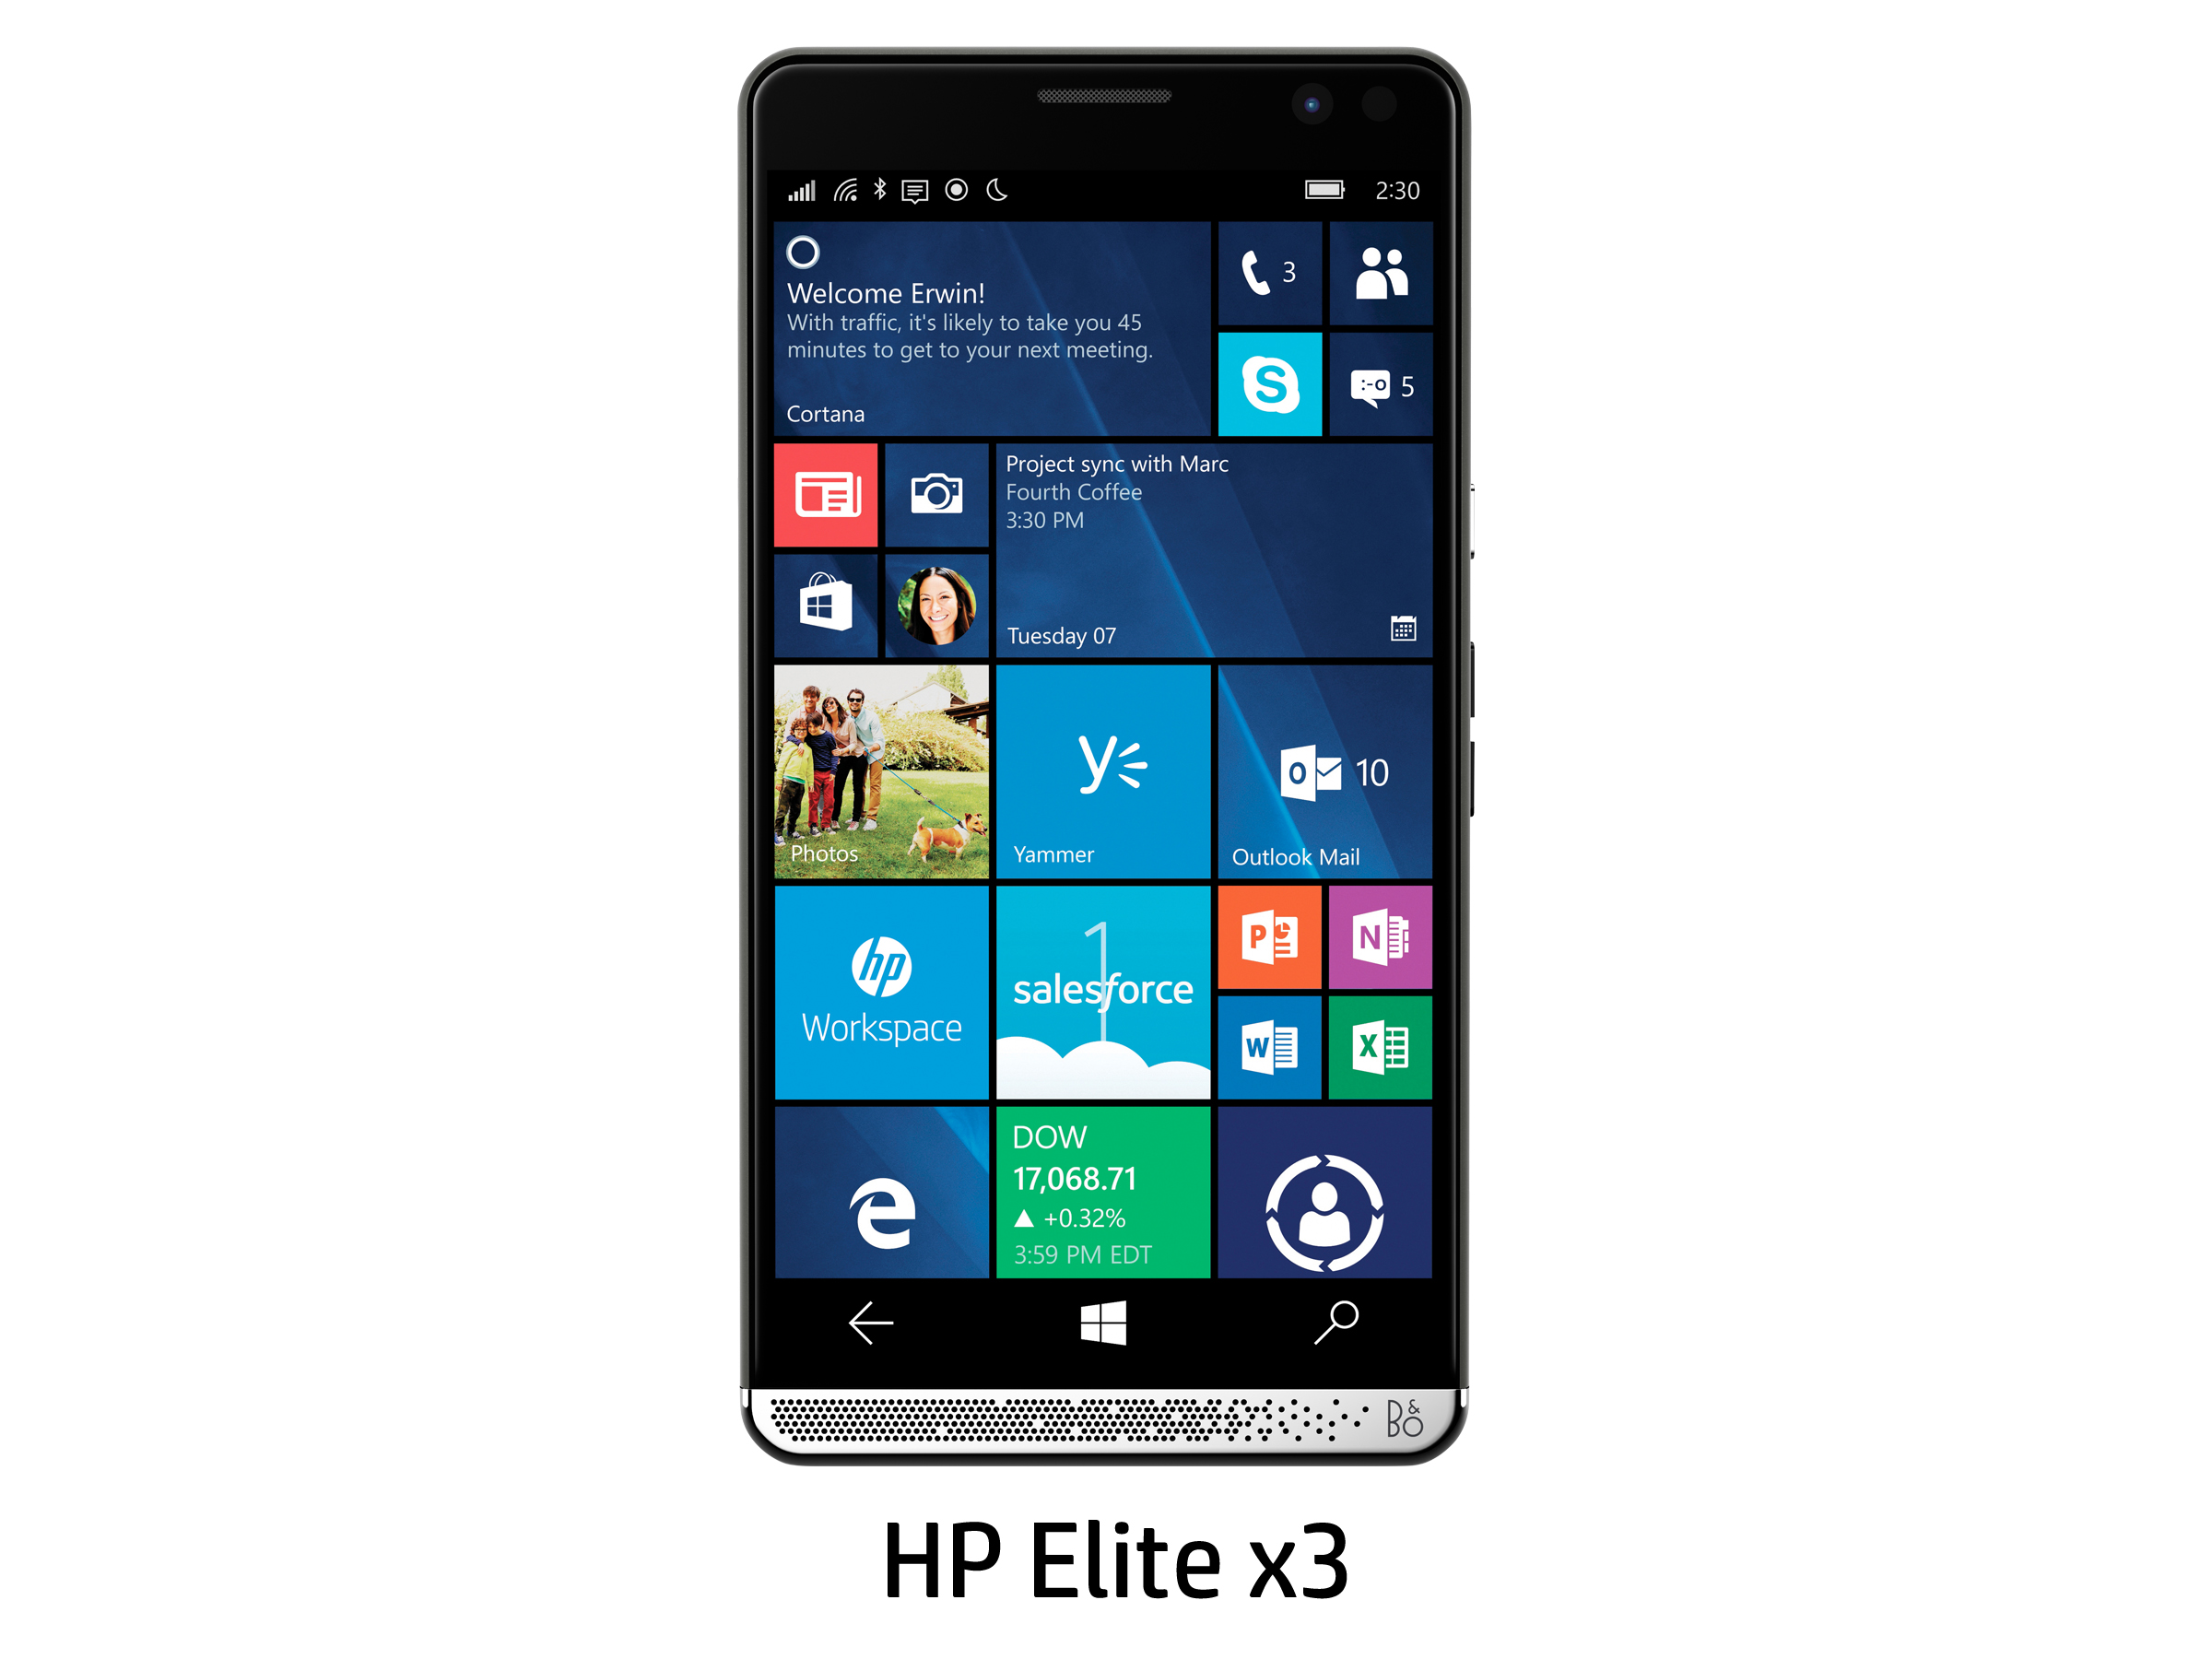 スマホ時々PC、Windows 10 Mobile搭載デバイス「HP Elite x3」登場